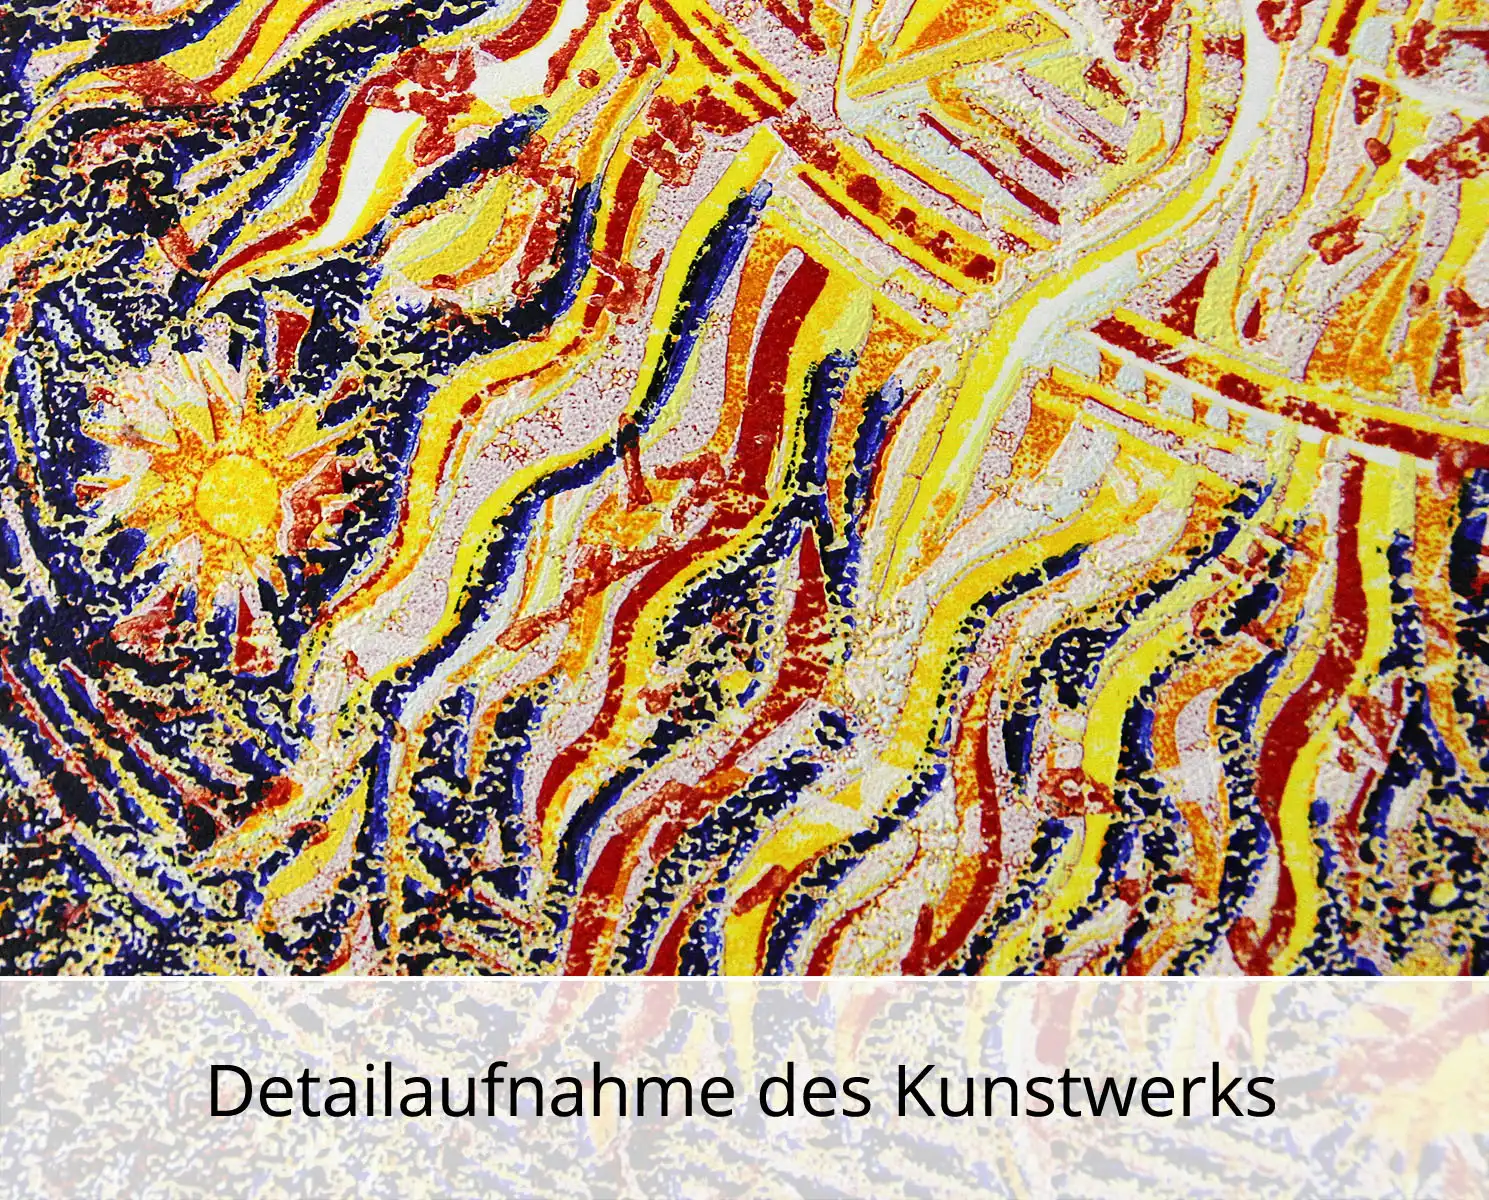 F.O. Haake: "Ohne Titel - Unikat", originale Grafik/serielles Unikat, mehrfarbiger Linoldruck